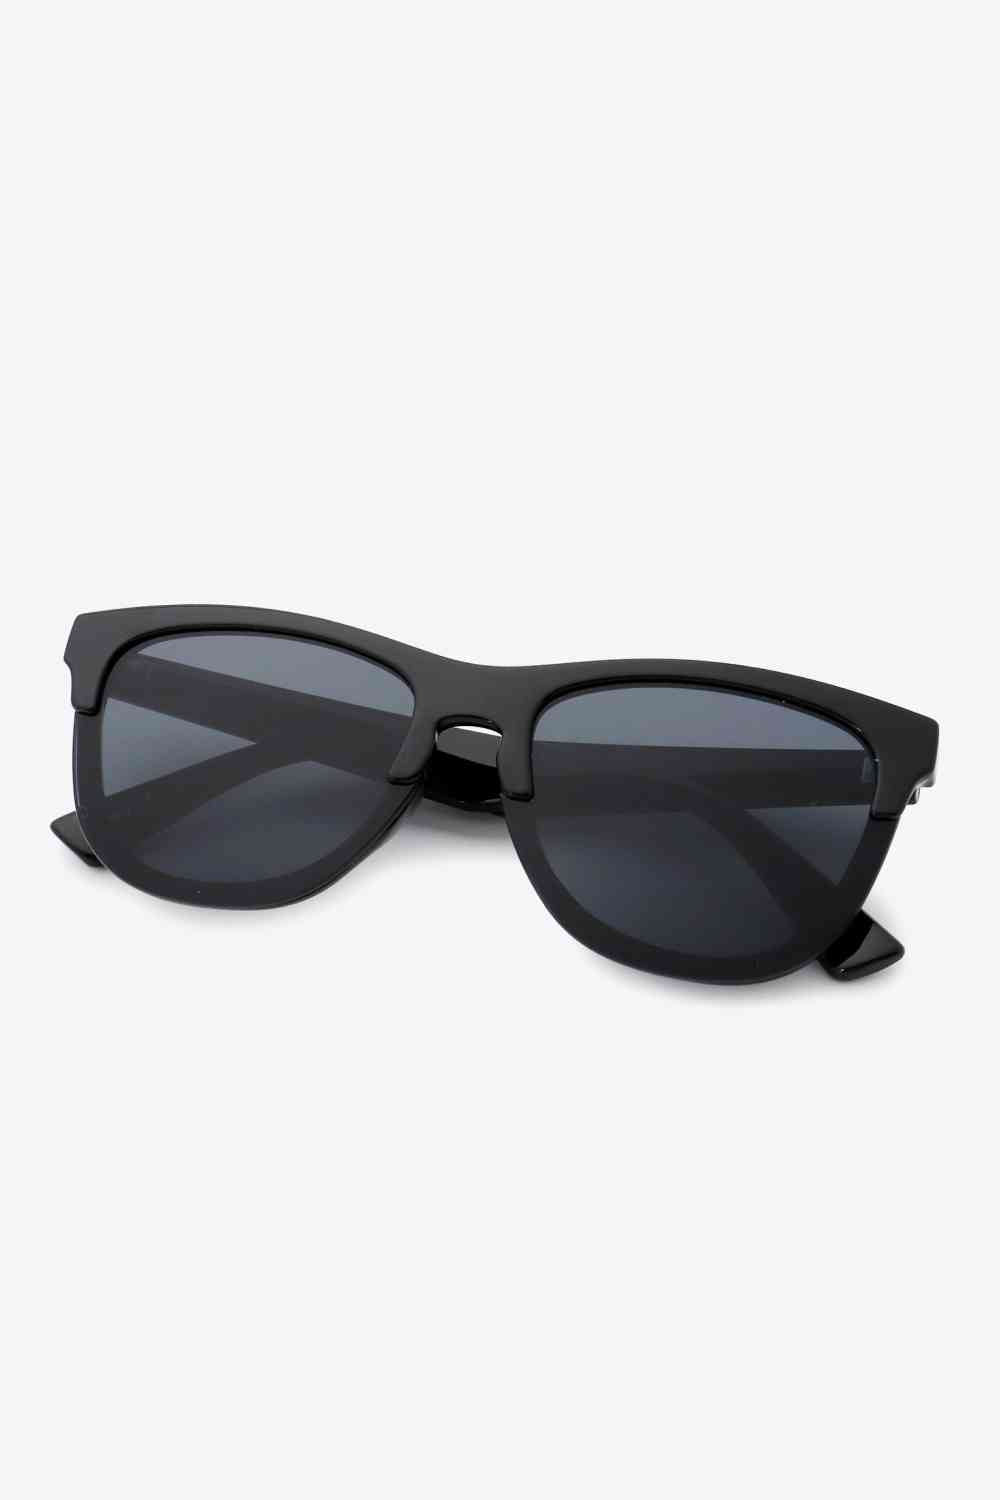 UV400 Browline Wayfarer Sunglasses Black One Size